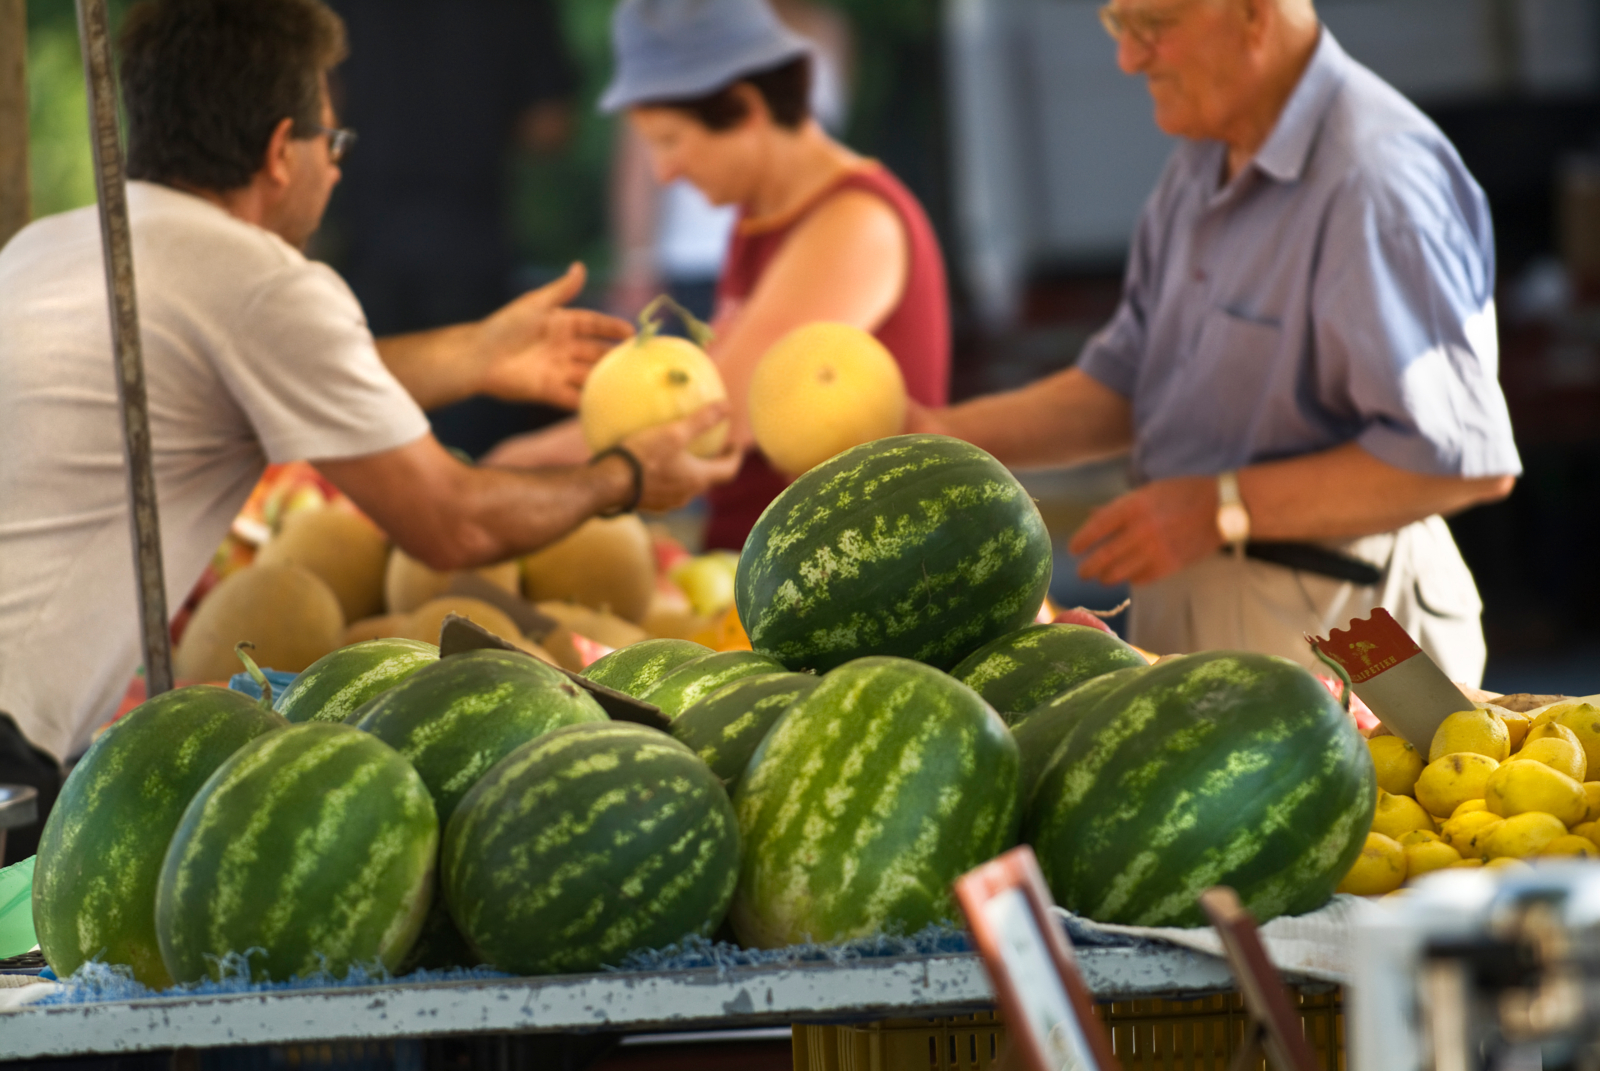 Organic Public Procurement is a Win-Win Scenario for Farmers, Consumers & Public Goods